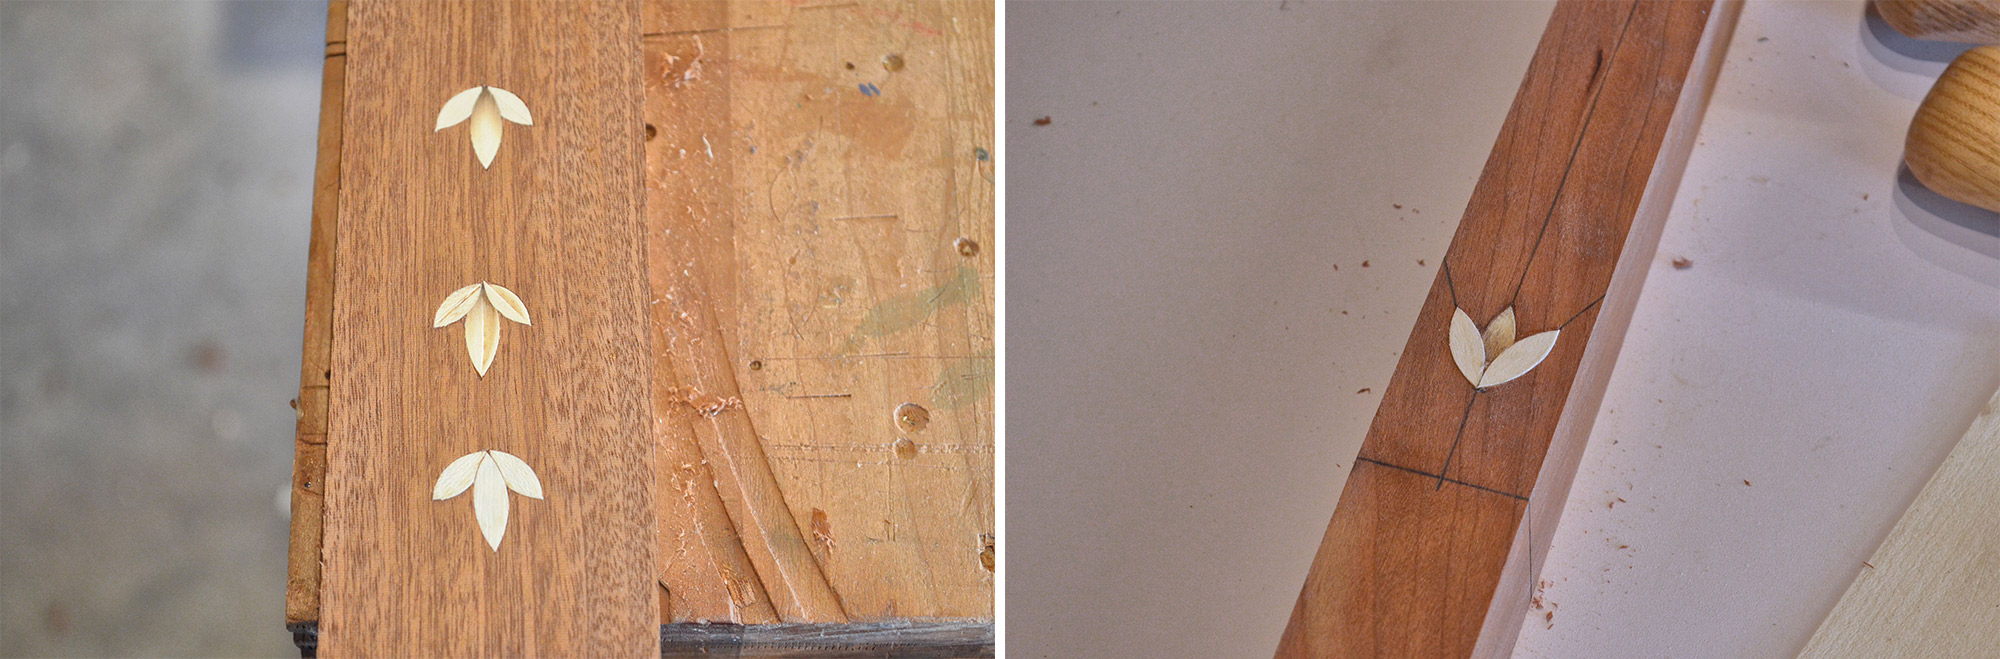 Image de gauche : Le motif de campanule simple et deux variantes. Image de droite : Pétale central ombré pour modifier l'apparence.